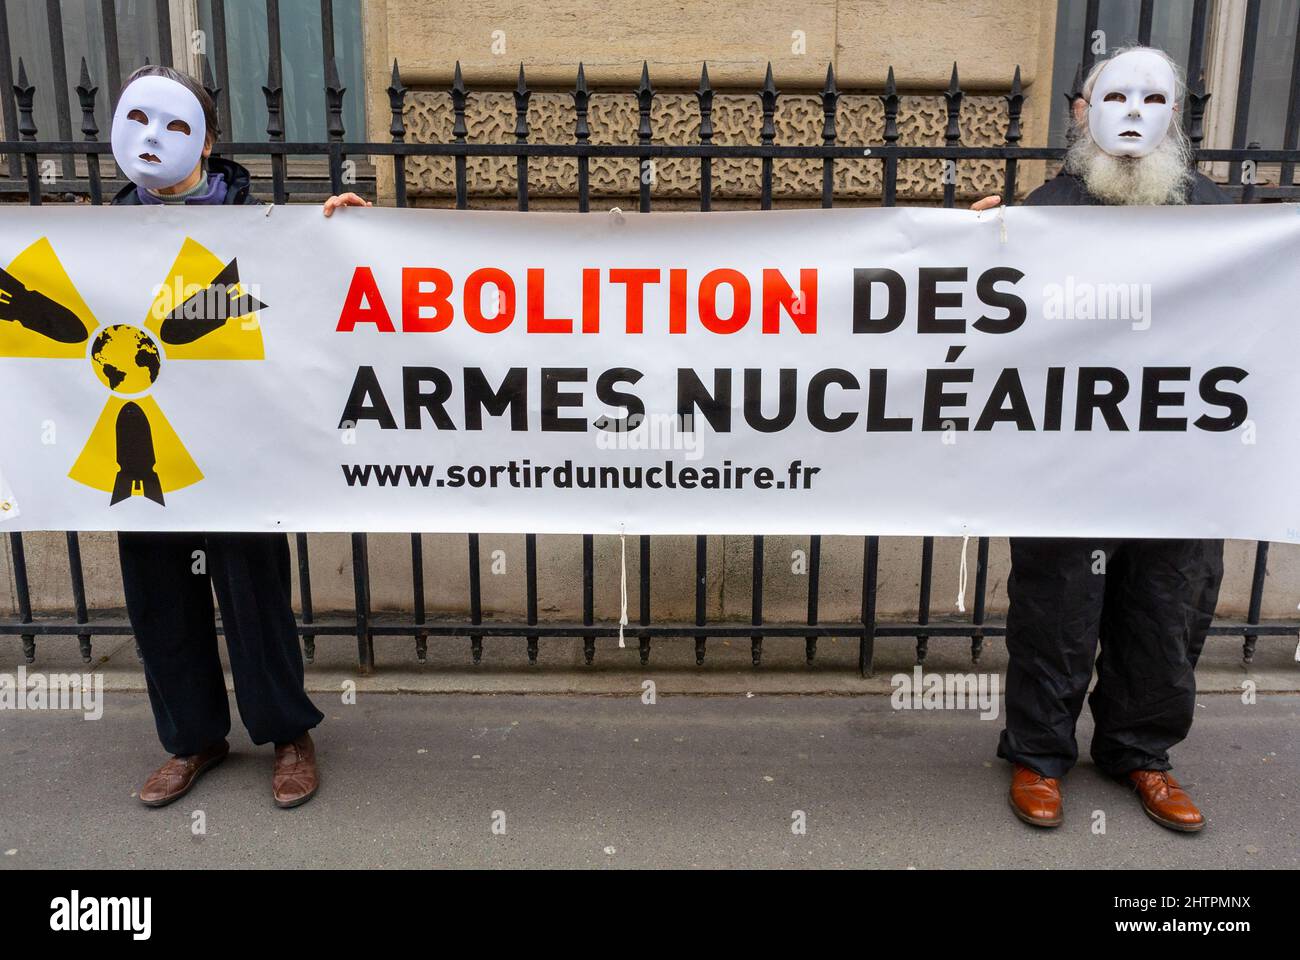 Paris, France, manifestation anti-armes nucléaires, personnes en masques tenant des pancartes de protestation, politique internationale Banque D'Images